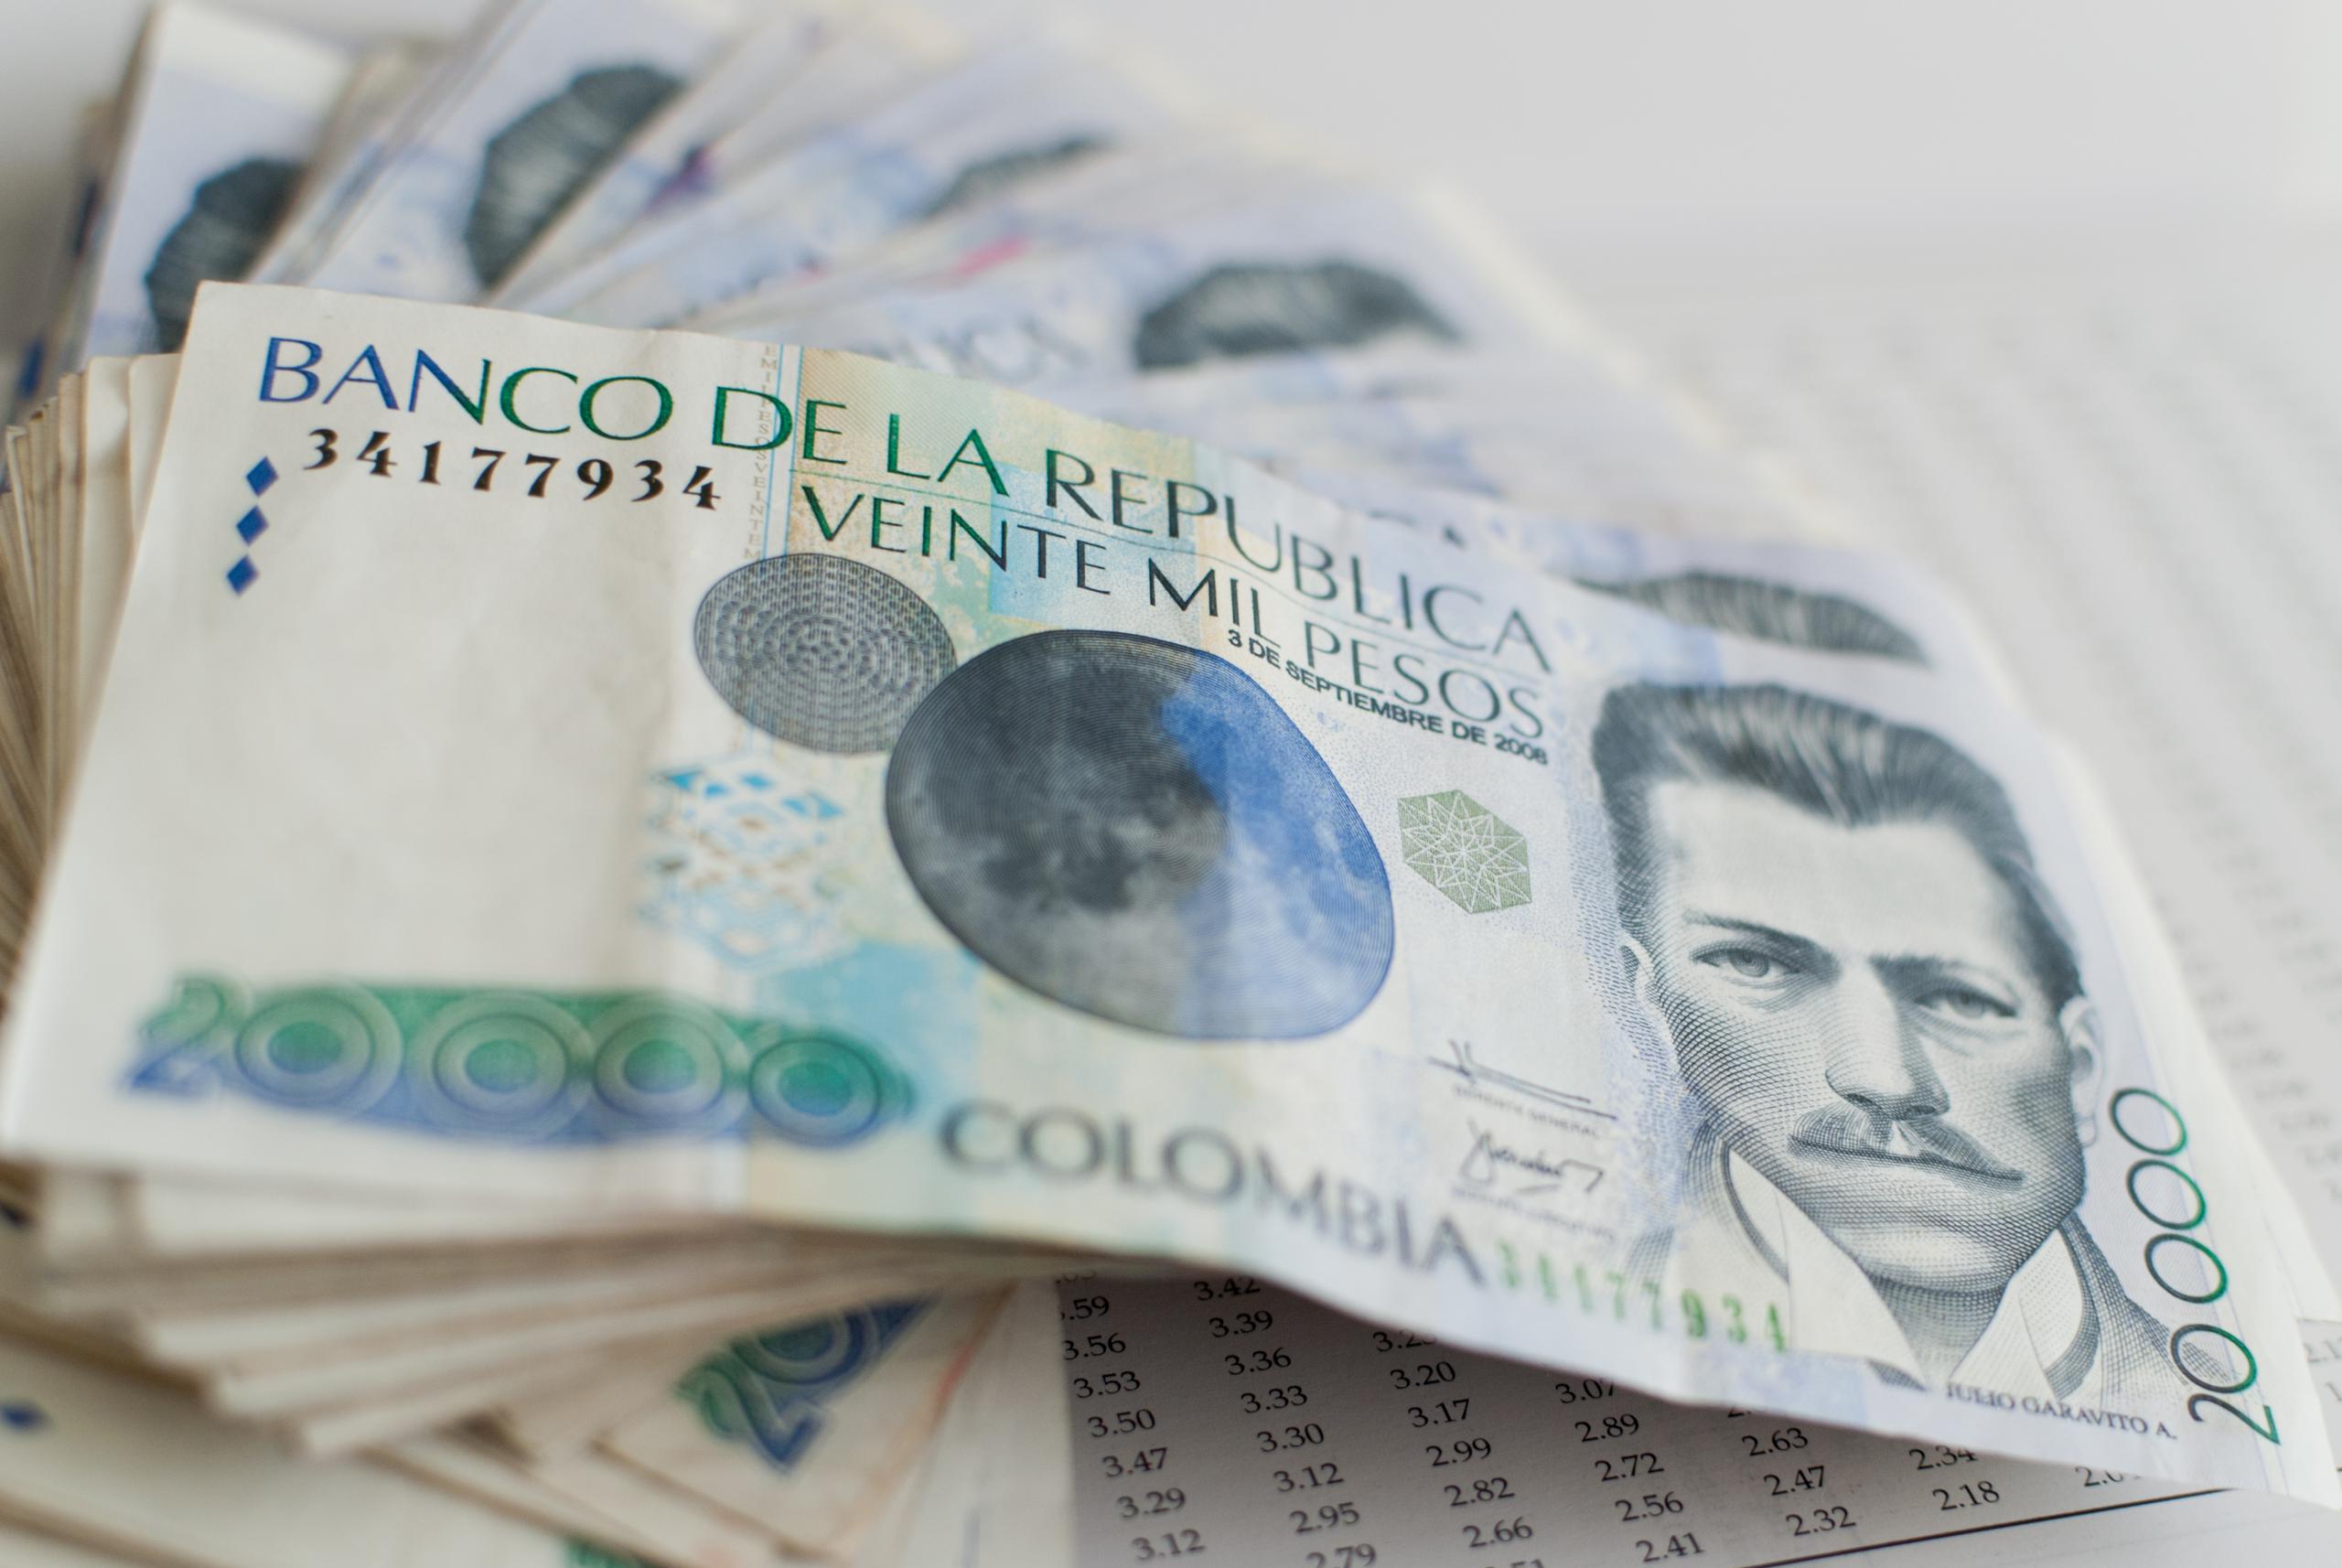 Personal de la Unidad Marítima interceptó una yola con cuatro indicumentados en la que transportaban $480,000 pesos colombianos. (Archivo)